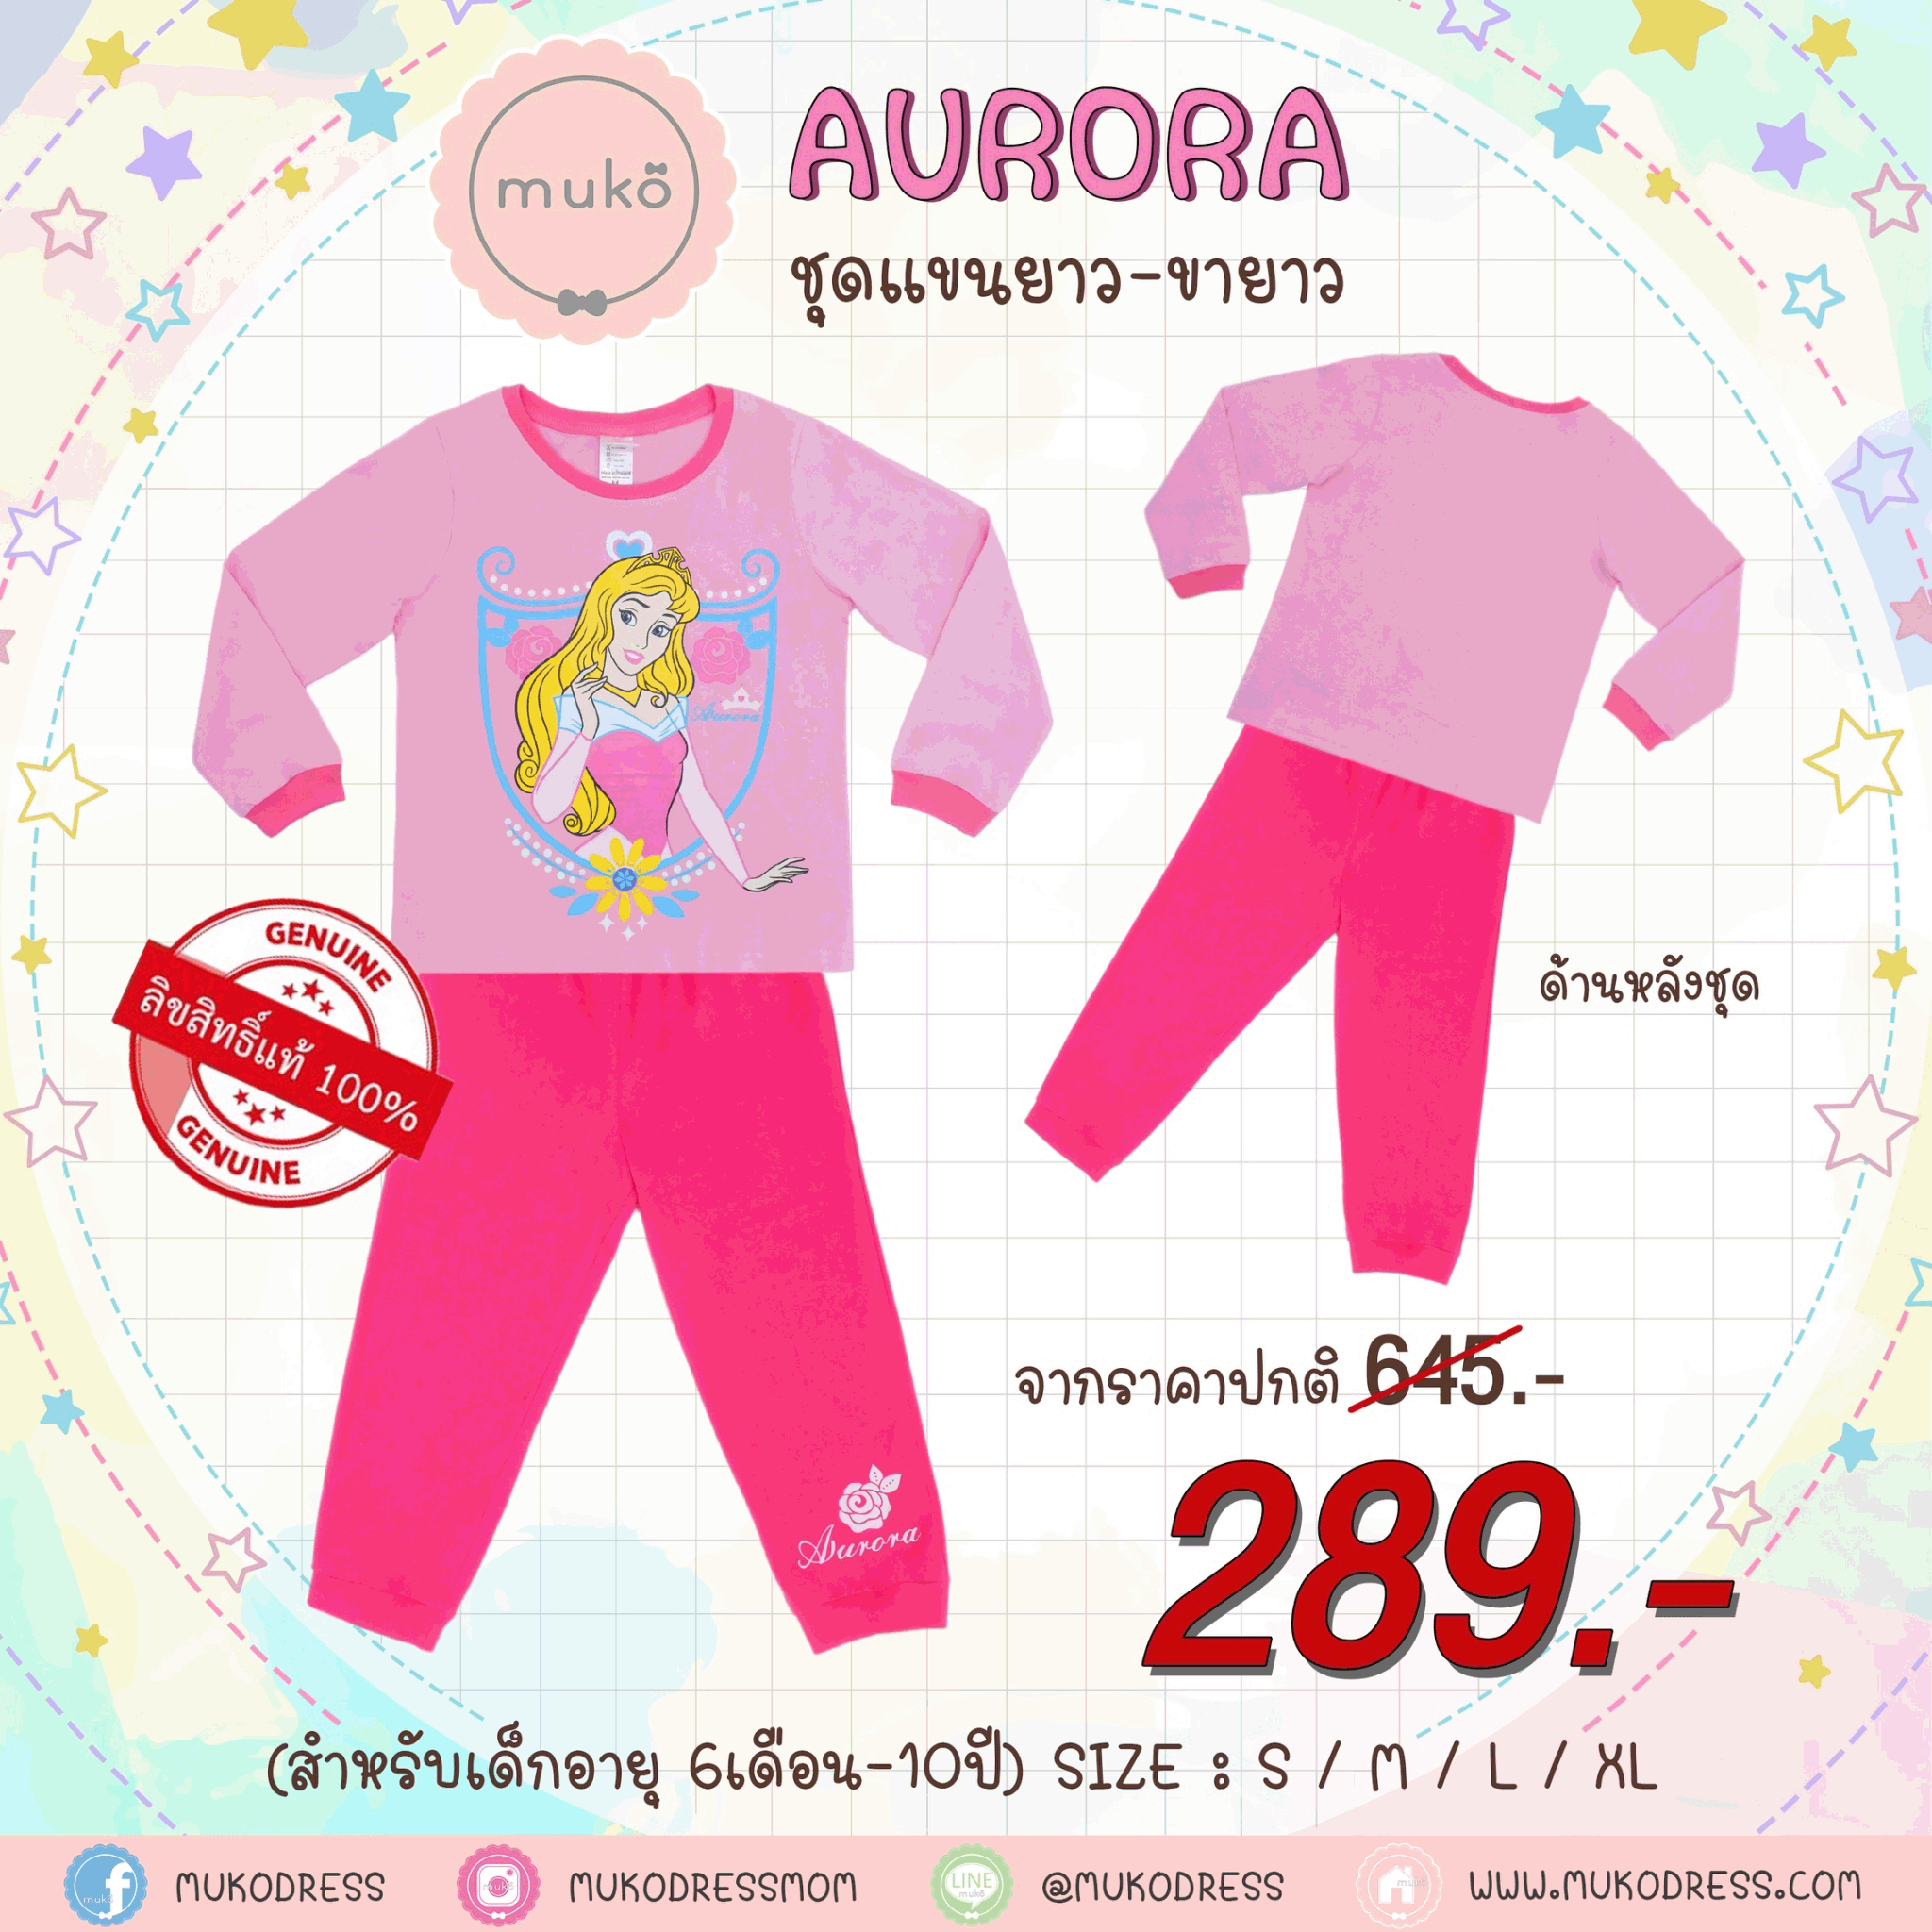 ชุดเด็ก 6-7 ขวบ แขนยาว-ขายาว (Size L) DPC127-12-XL-Light Pink L ลาย เจ้าหญิงออโรร่า Aurora สีชมพูอ่อน (ชมพูอ่อน)